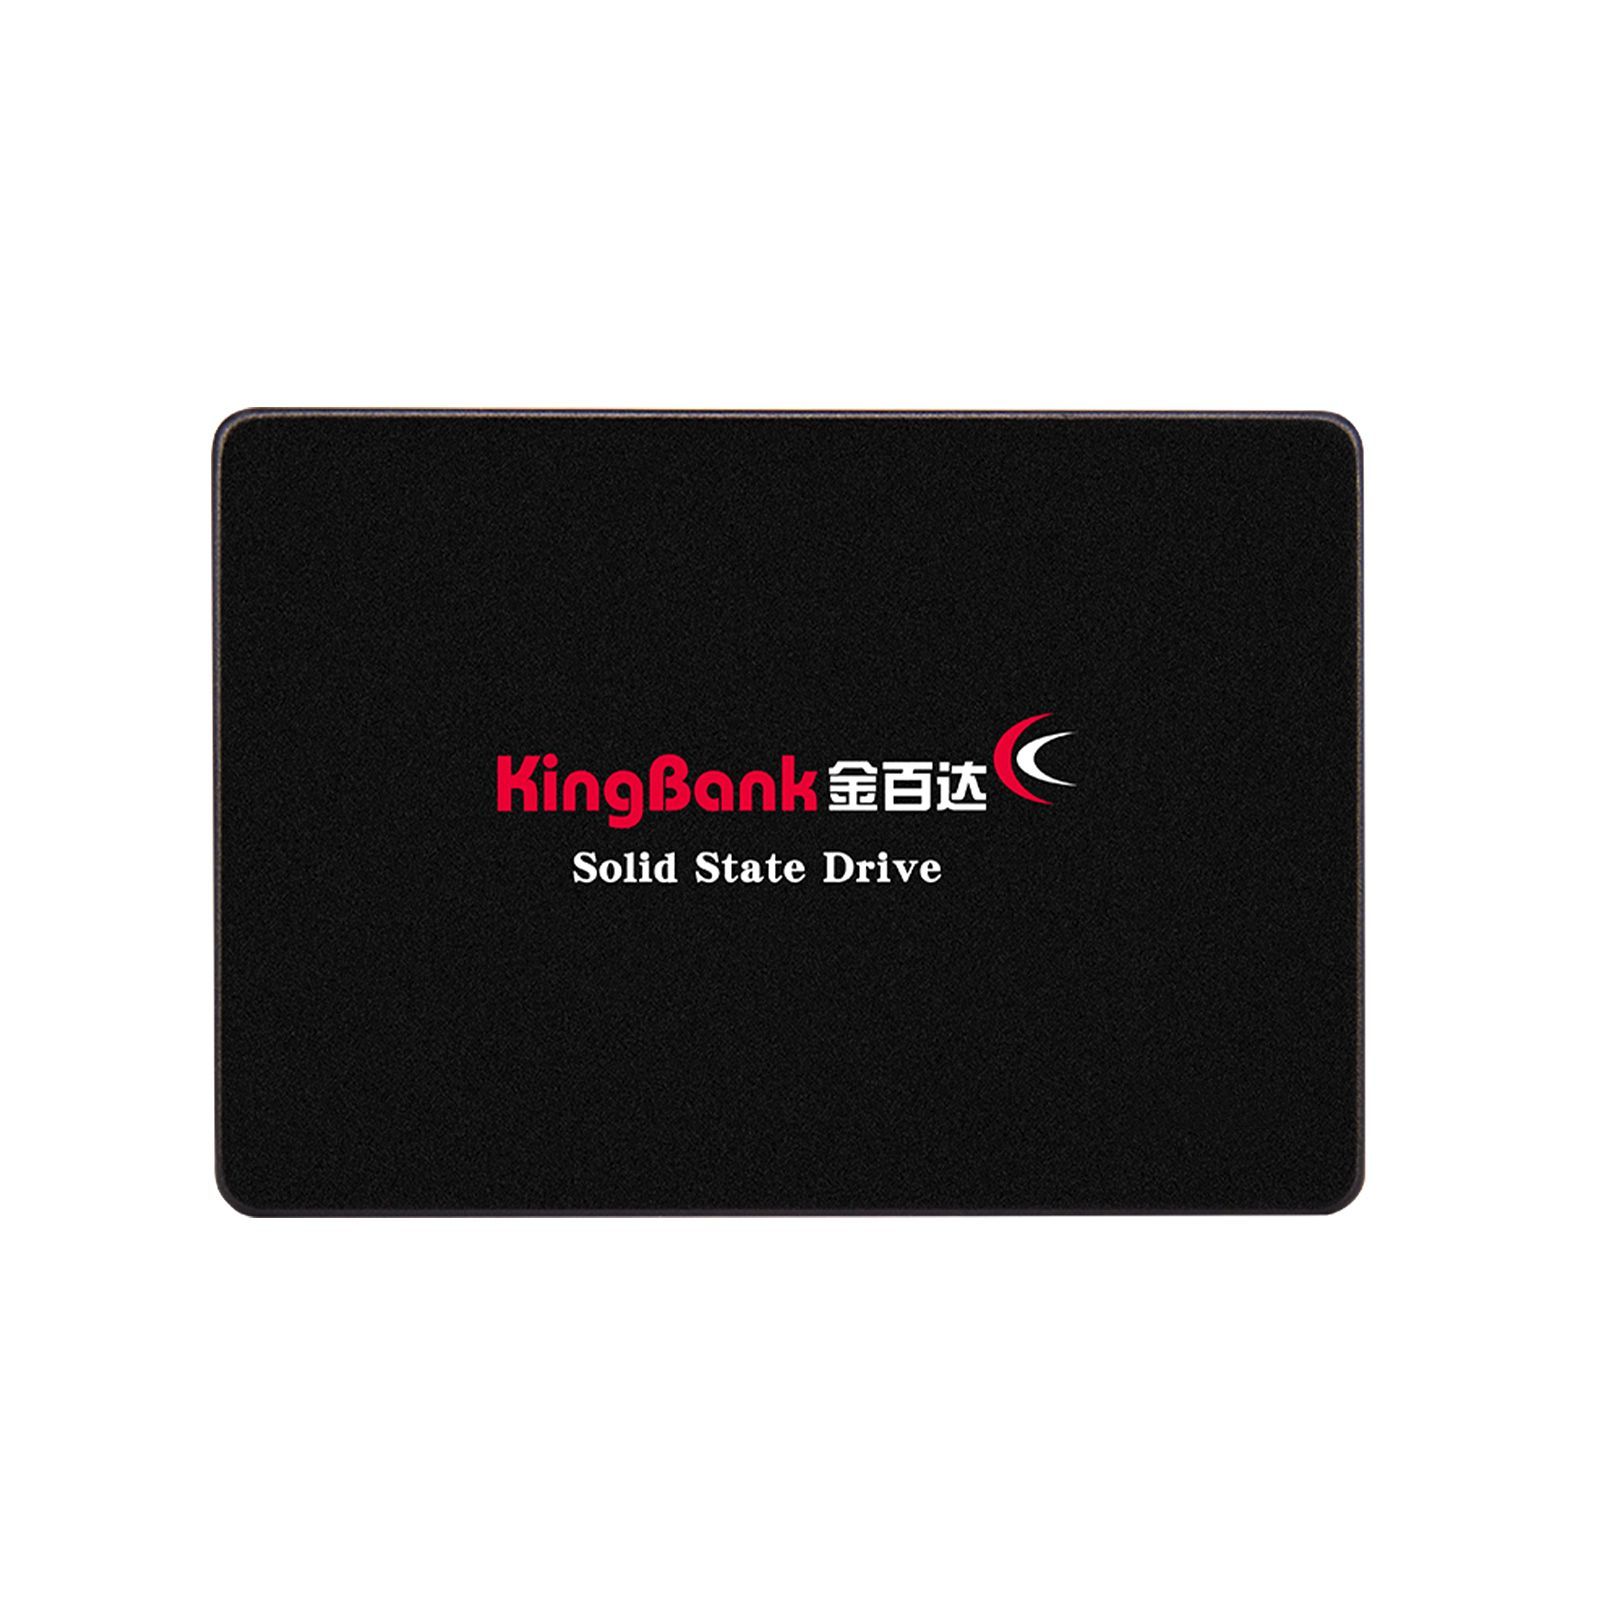 Kingbank xmp expo. SSD KINGBANK KP 320. KINGBANK kp330.